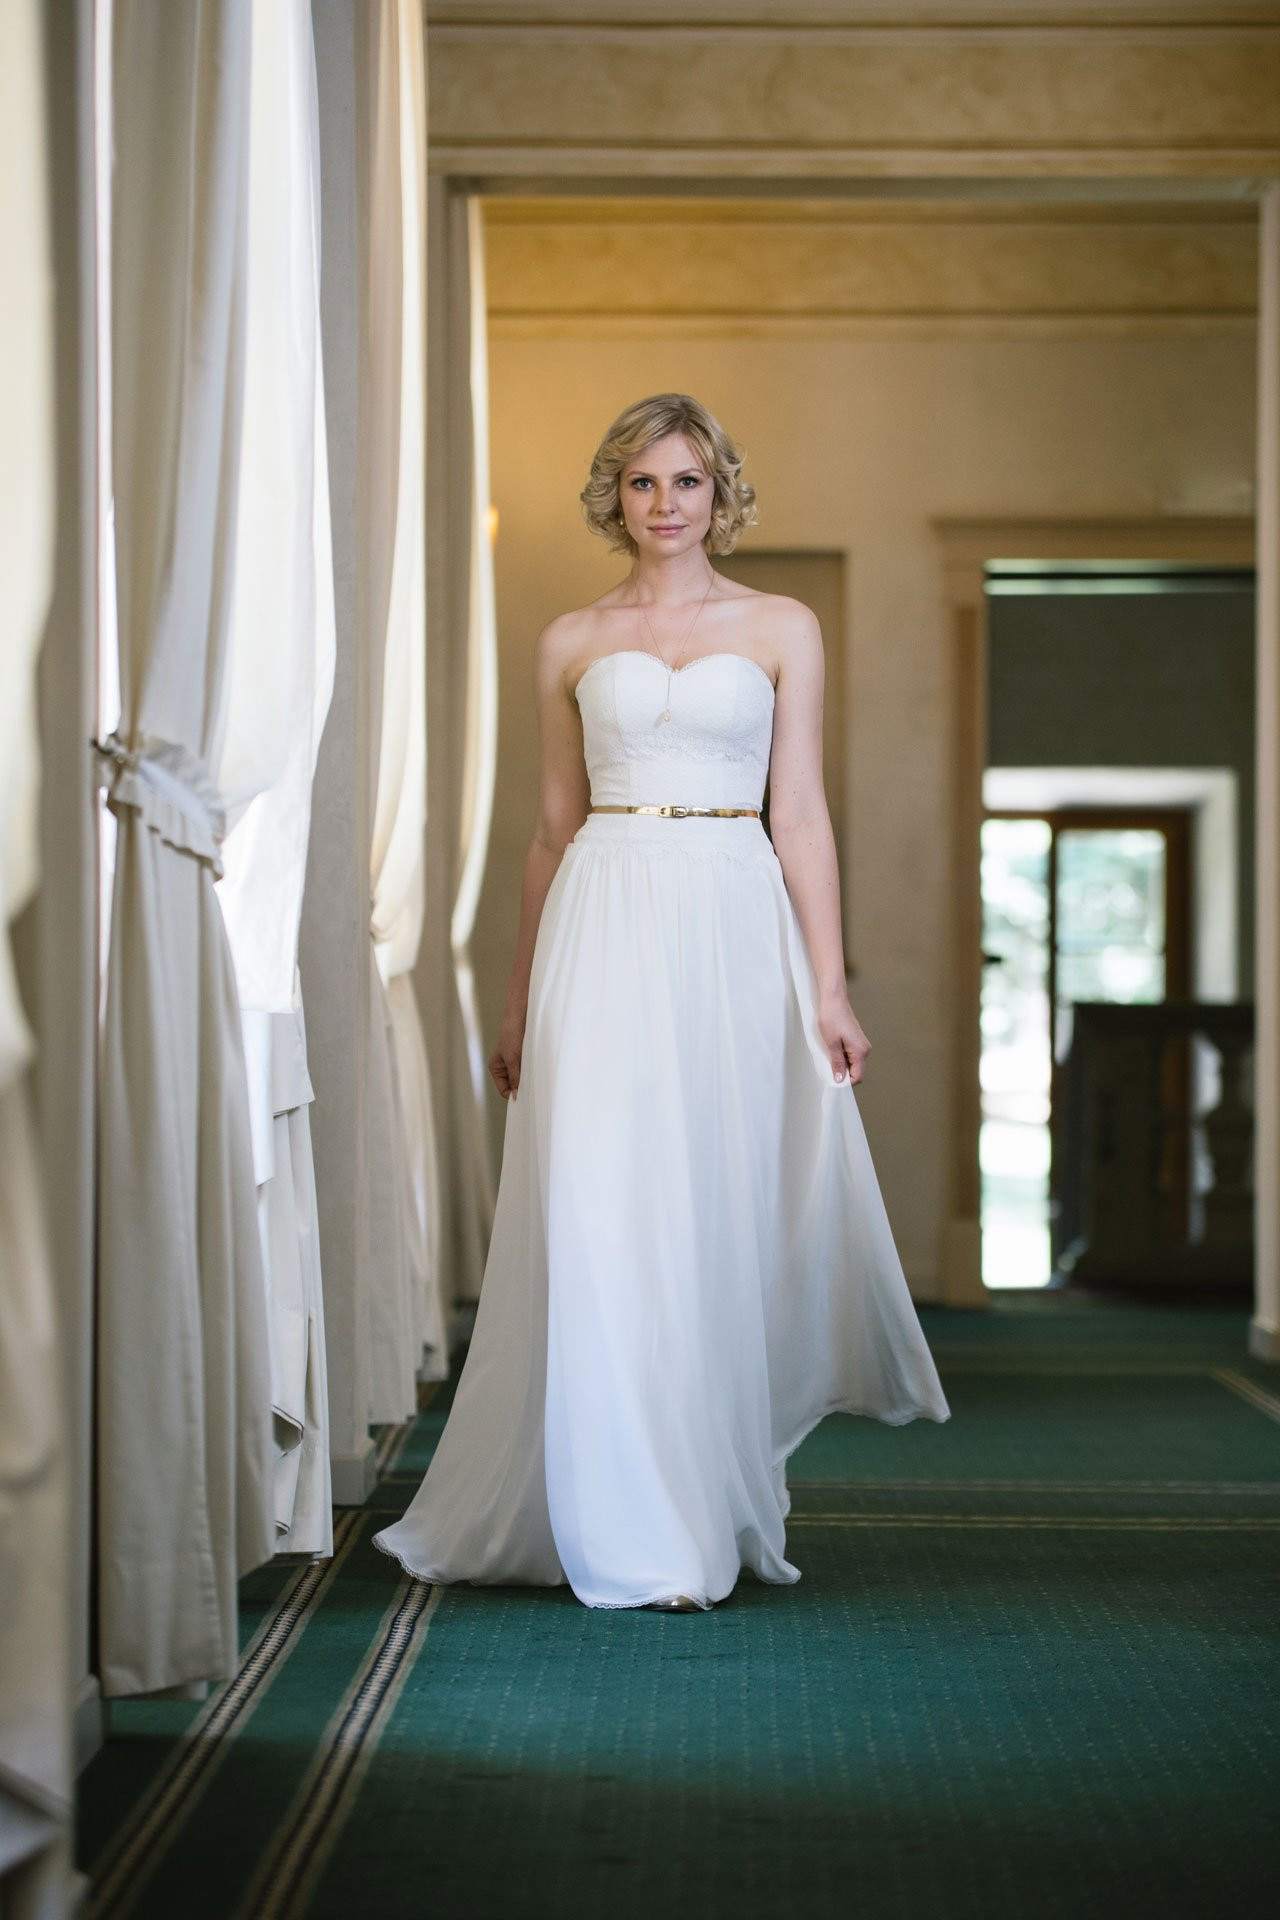 20Er Jahre Hochzeitskleid
 Brautkleid inspiriert vom 20er Jahre Stil – Vintage Kleid